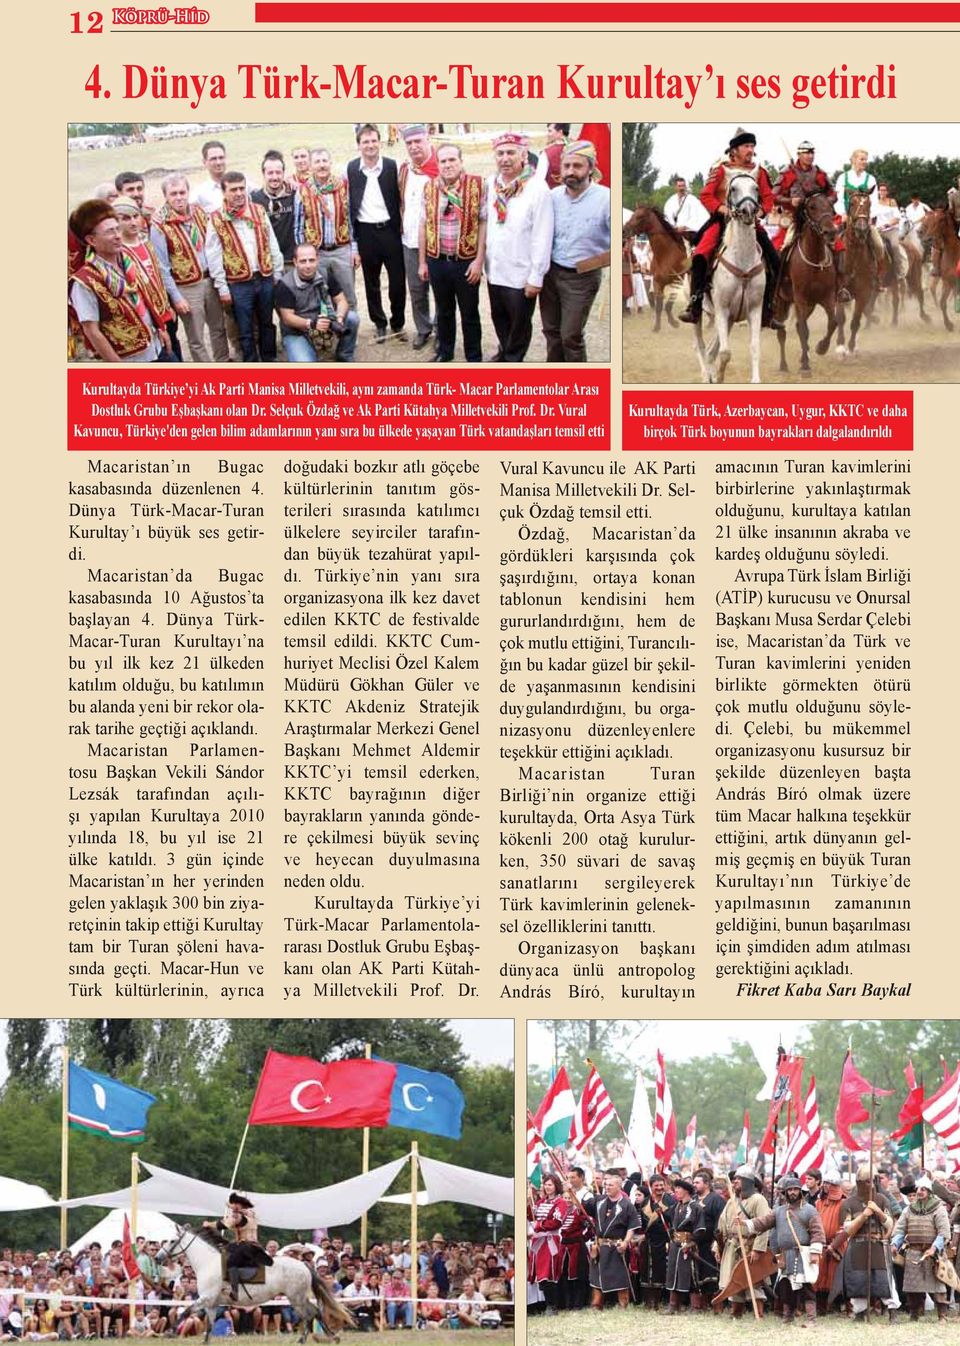 Vural Kavuncu, Türkiye'den gelen bilim adamlarının yanı sıra bu ülkede yaşayan Türk vatandaşları temsil etti Kurultayda Türk, Azerbaycan, Uygur, KKTC ve daha birçok Türk boyunun bayrakları